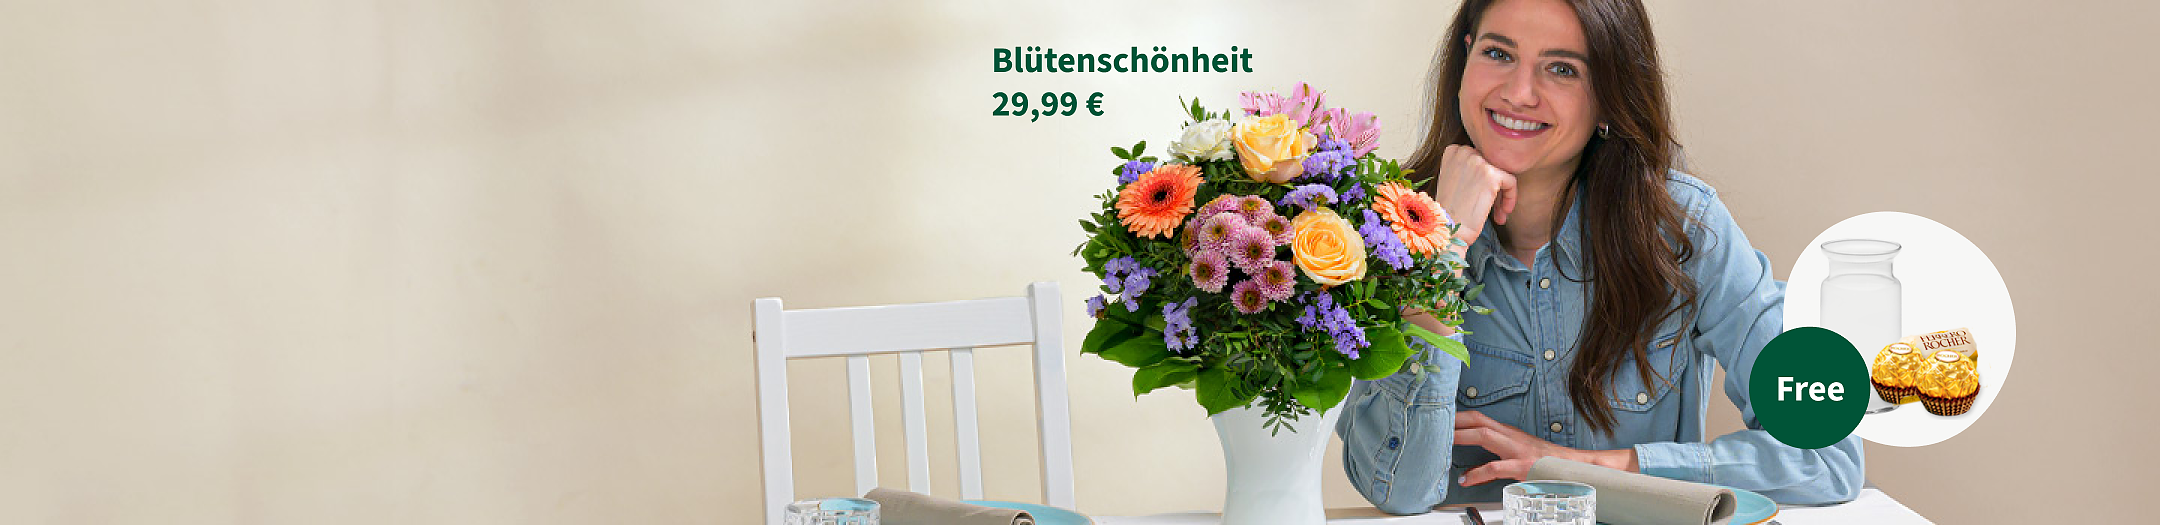 Flower Bouquet Blütenschönheit € 29.99